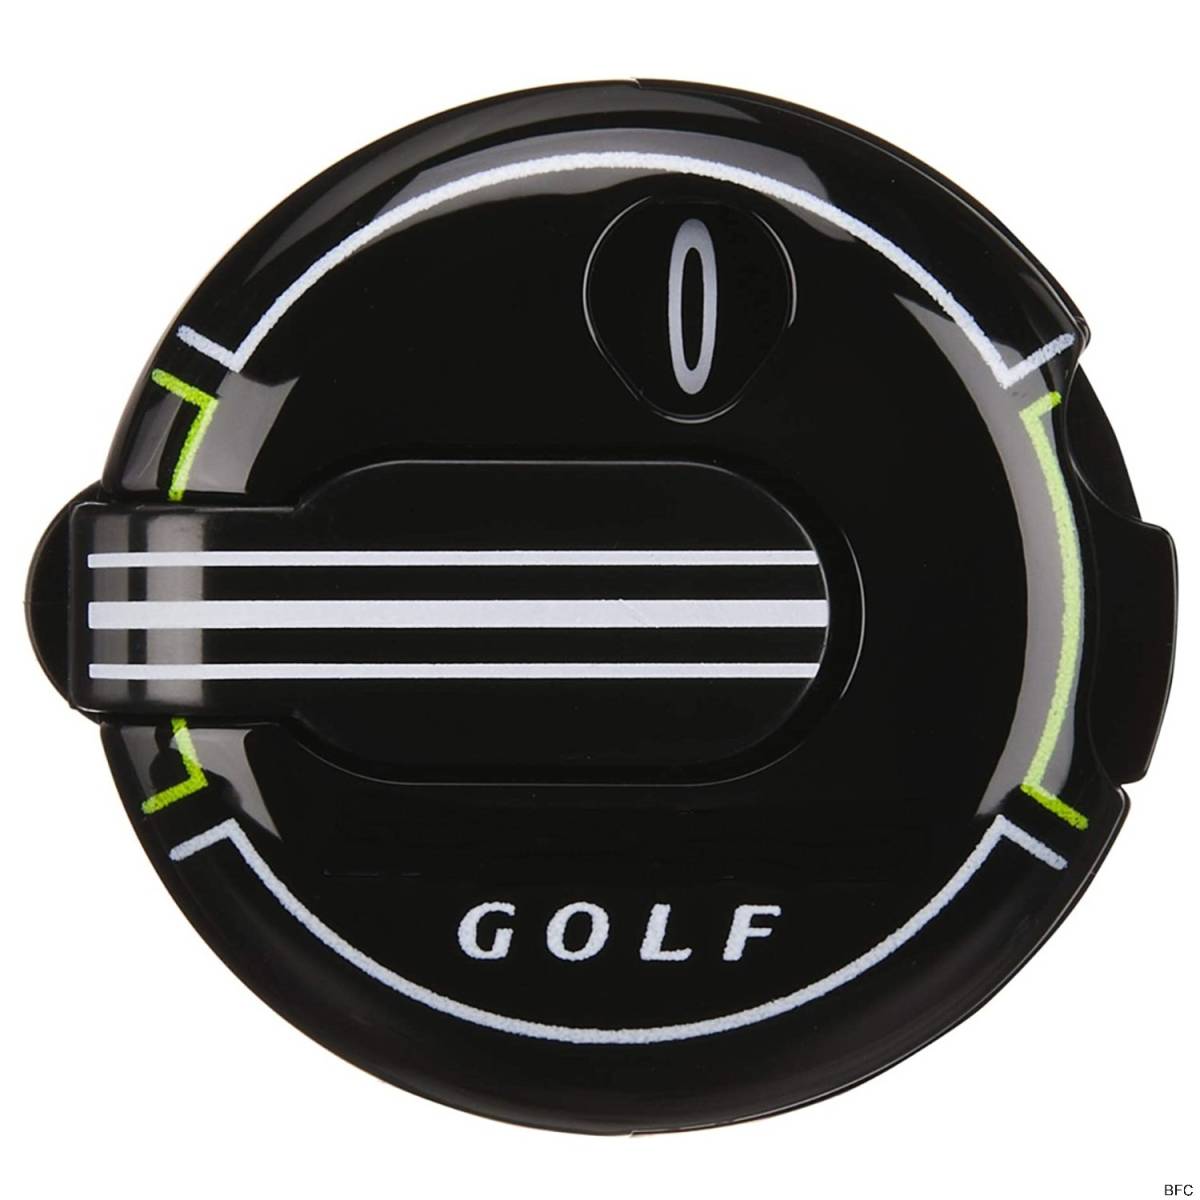 スコアカウンター ブラック 0〜12 GOLF 黒 ゴルフ ラウンド用品 リセット ワンタッチ 送料無料 カウント グローブ ポケット 取り付け